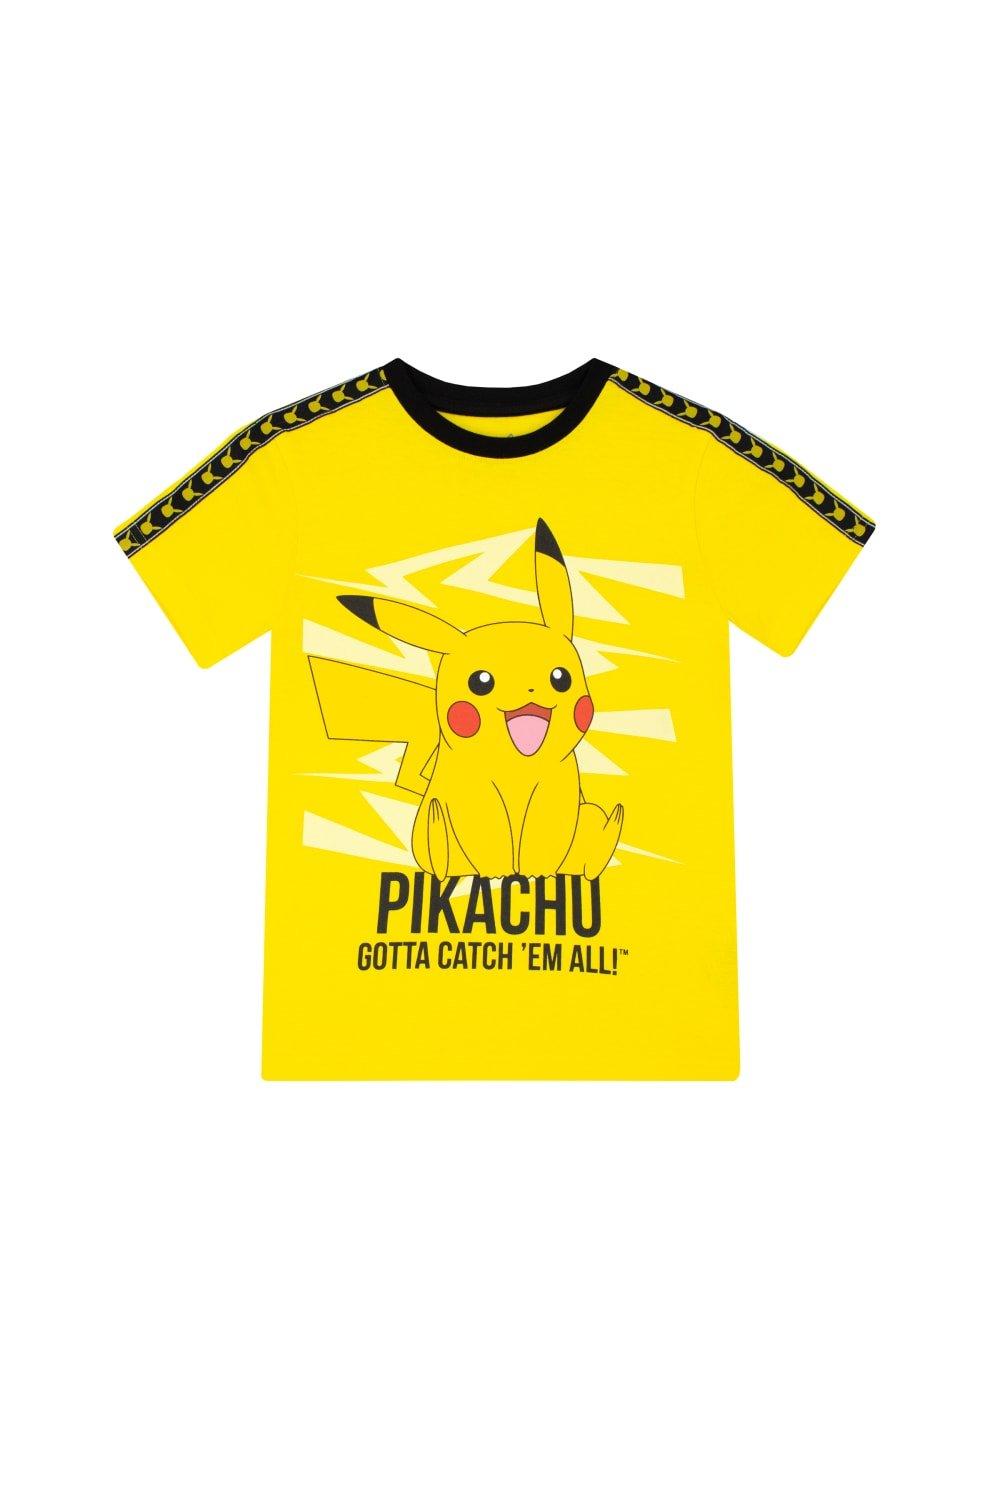 Детская футболка Pokemon, желтый